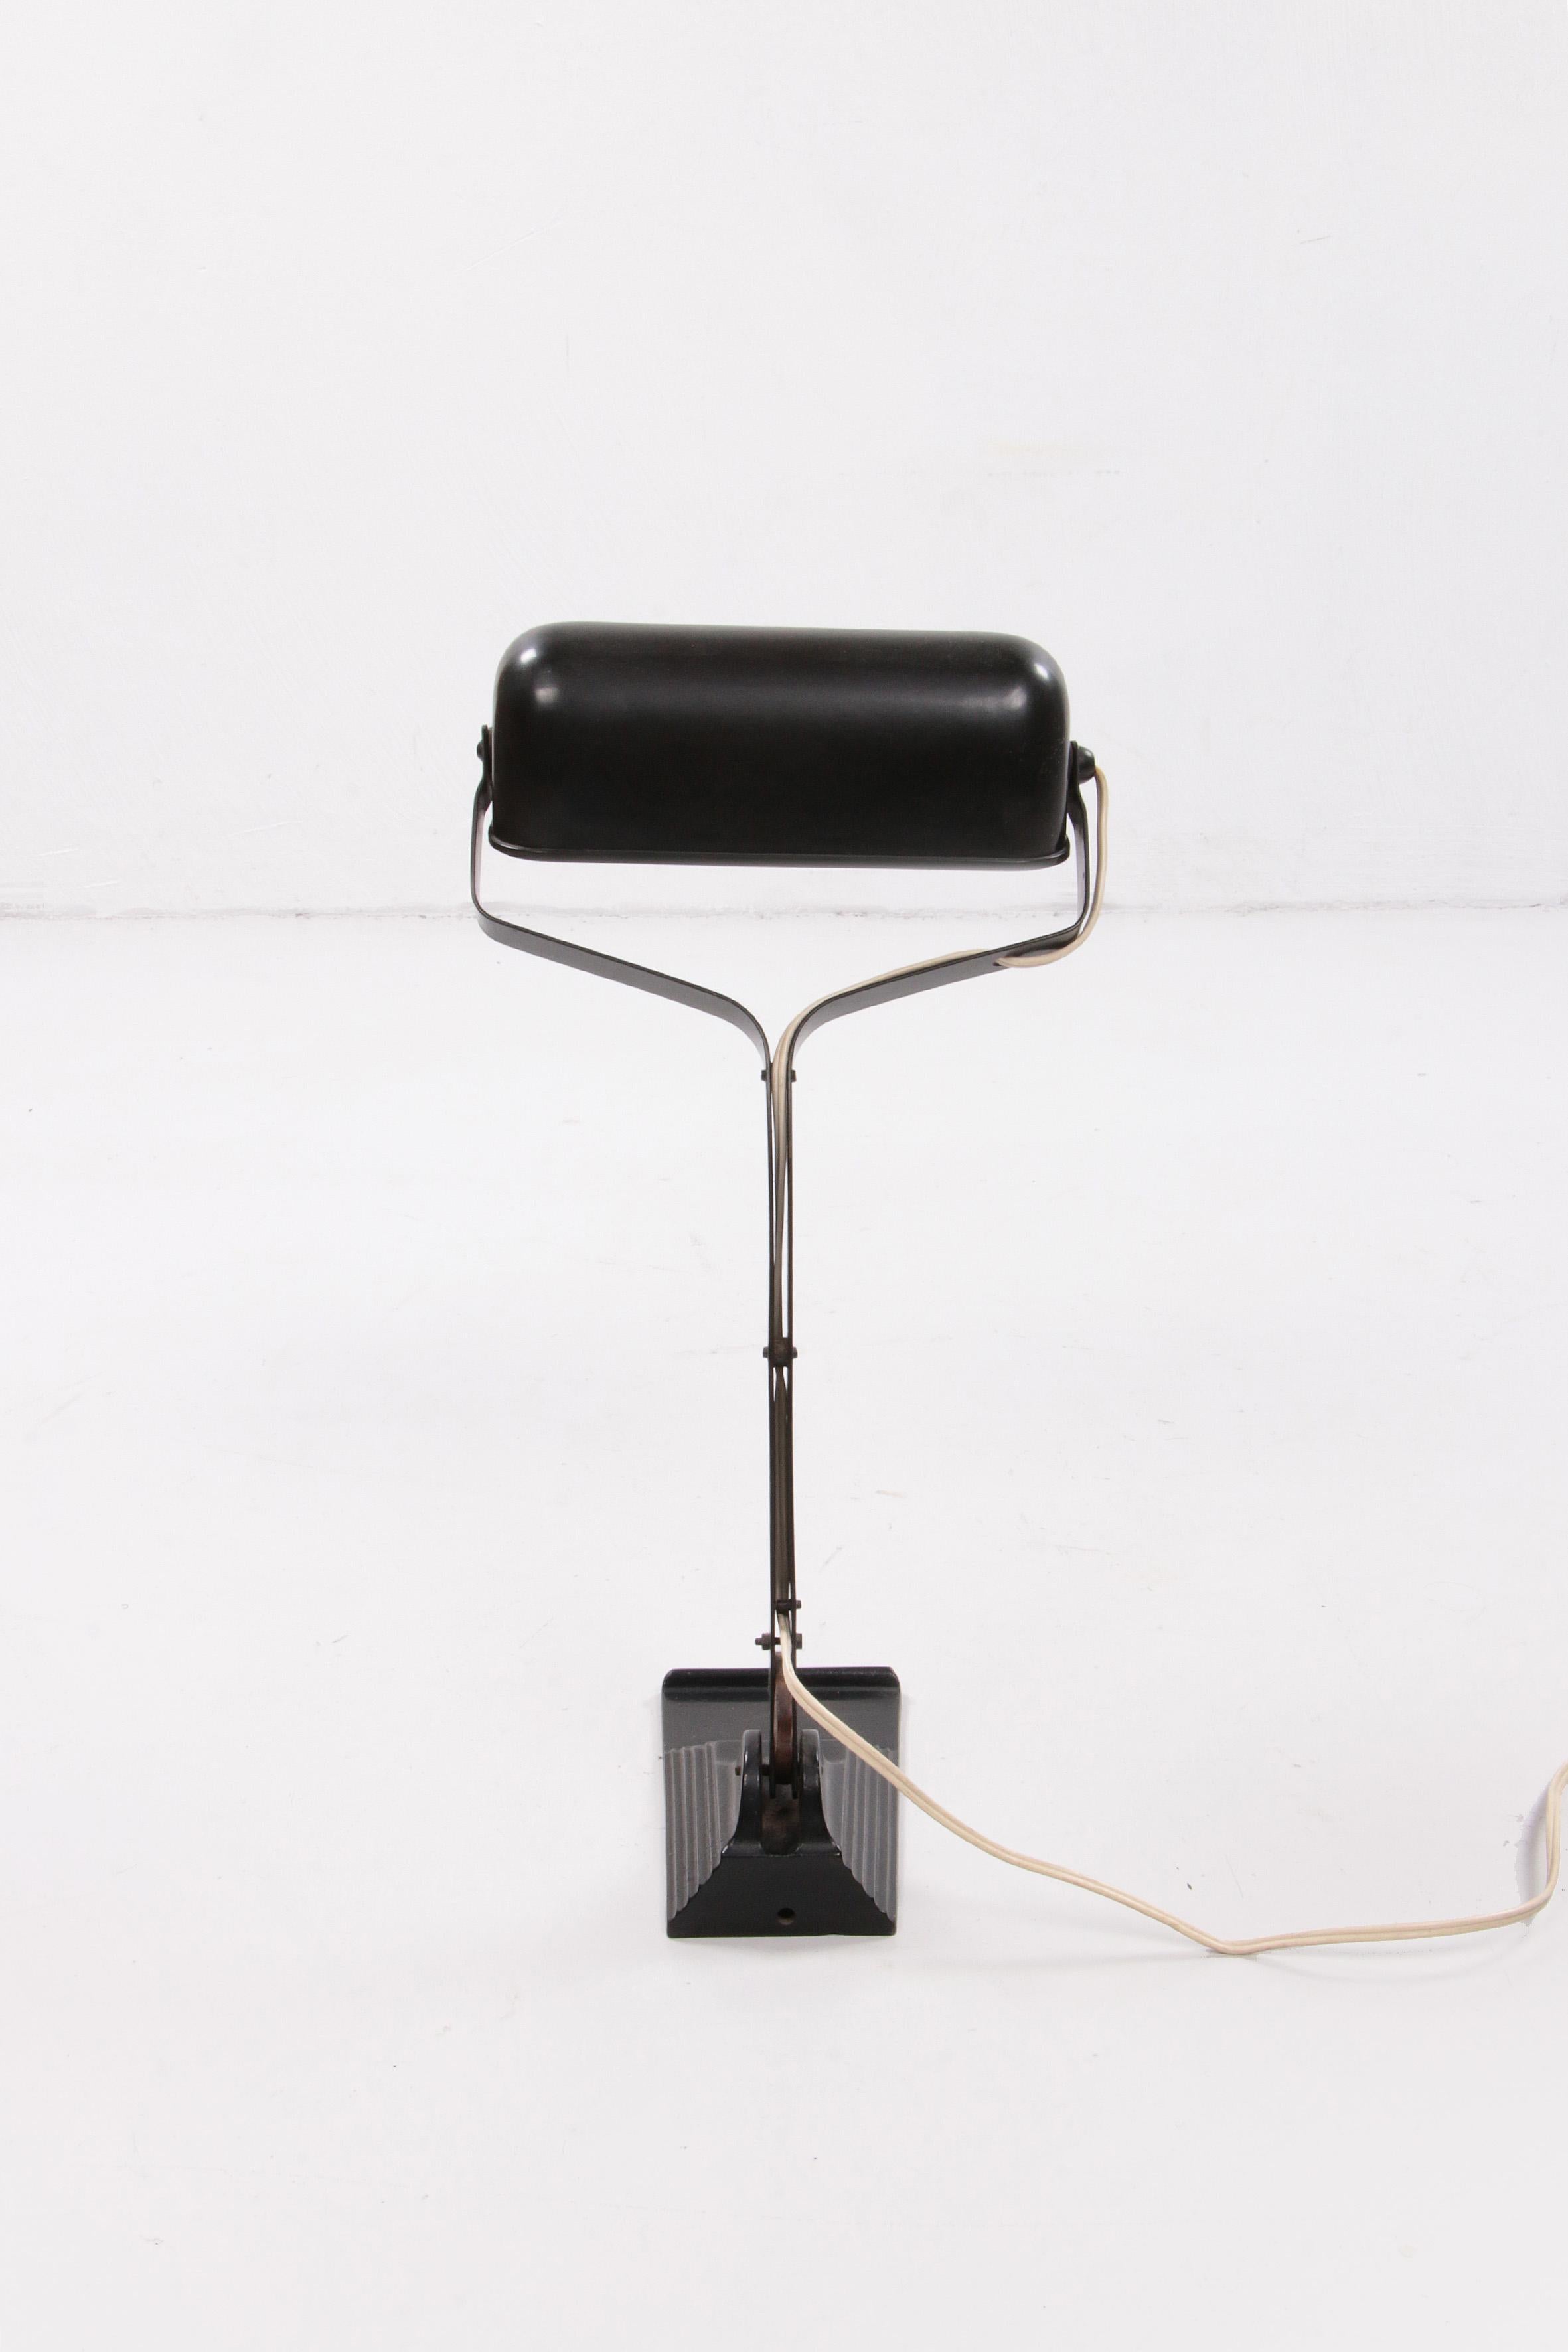 Schreibtischlampe im Art déco-Stil, auch (notary-Lampe) genannt, hergestellt von Erpe Belgium. 1